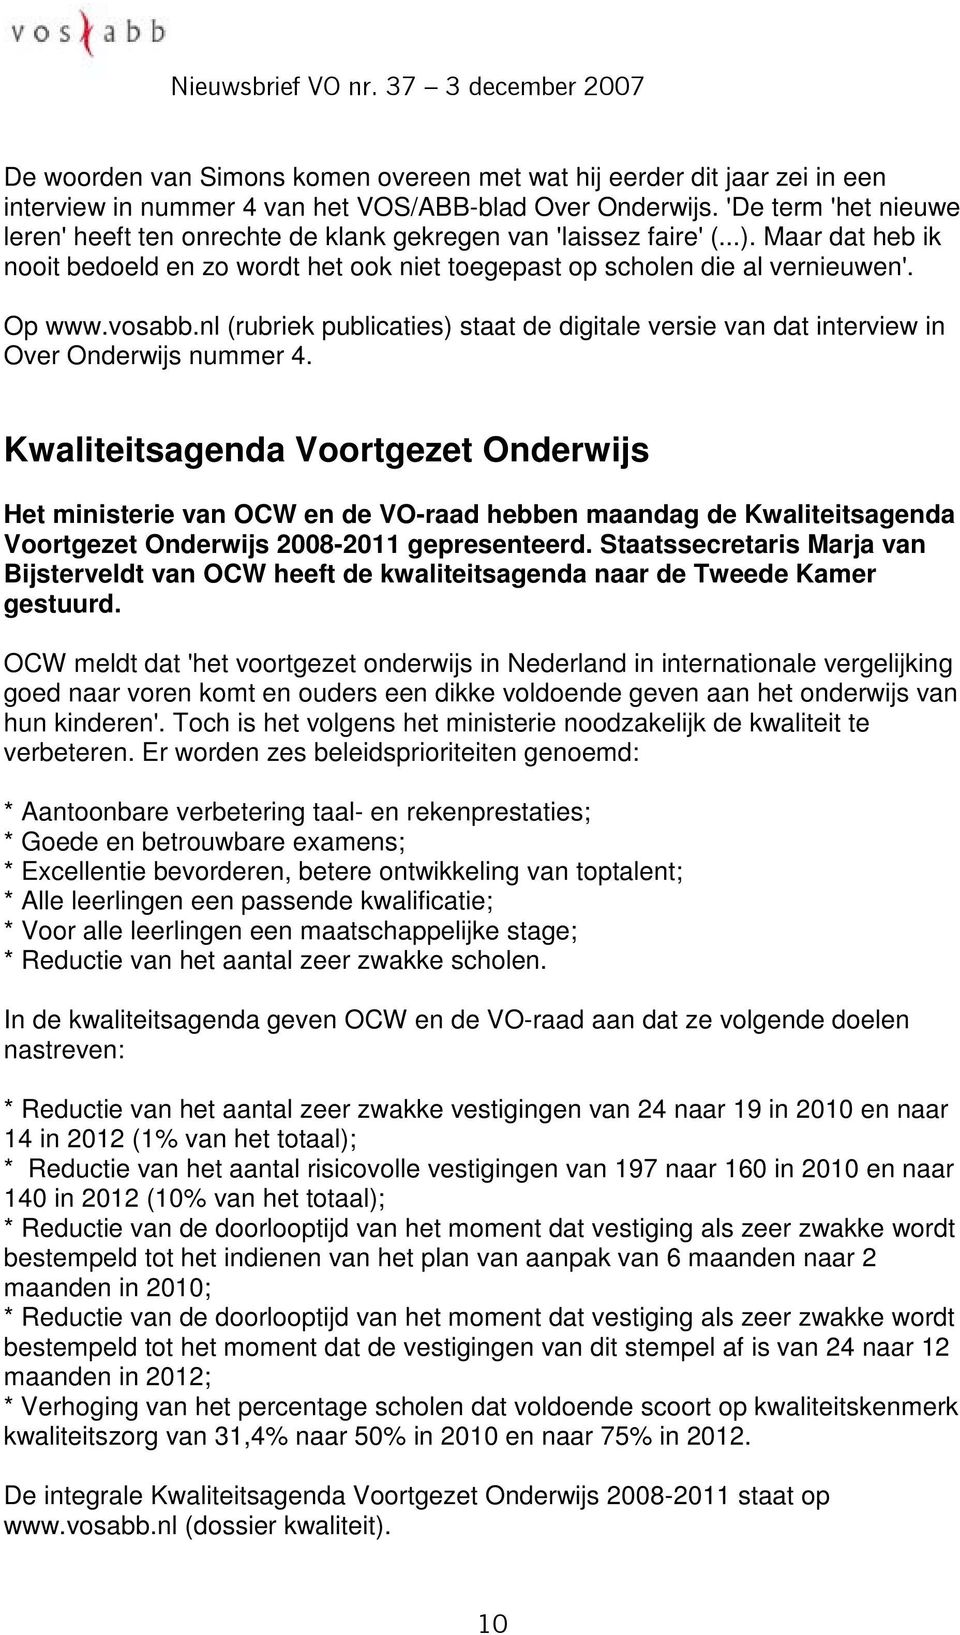 vosabb.nl (rubriek publicaties) staat de digitale versie van dat interview in Over Onderwijs nummer 4.